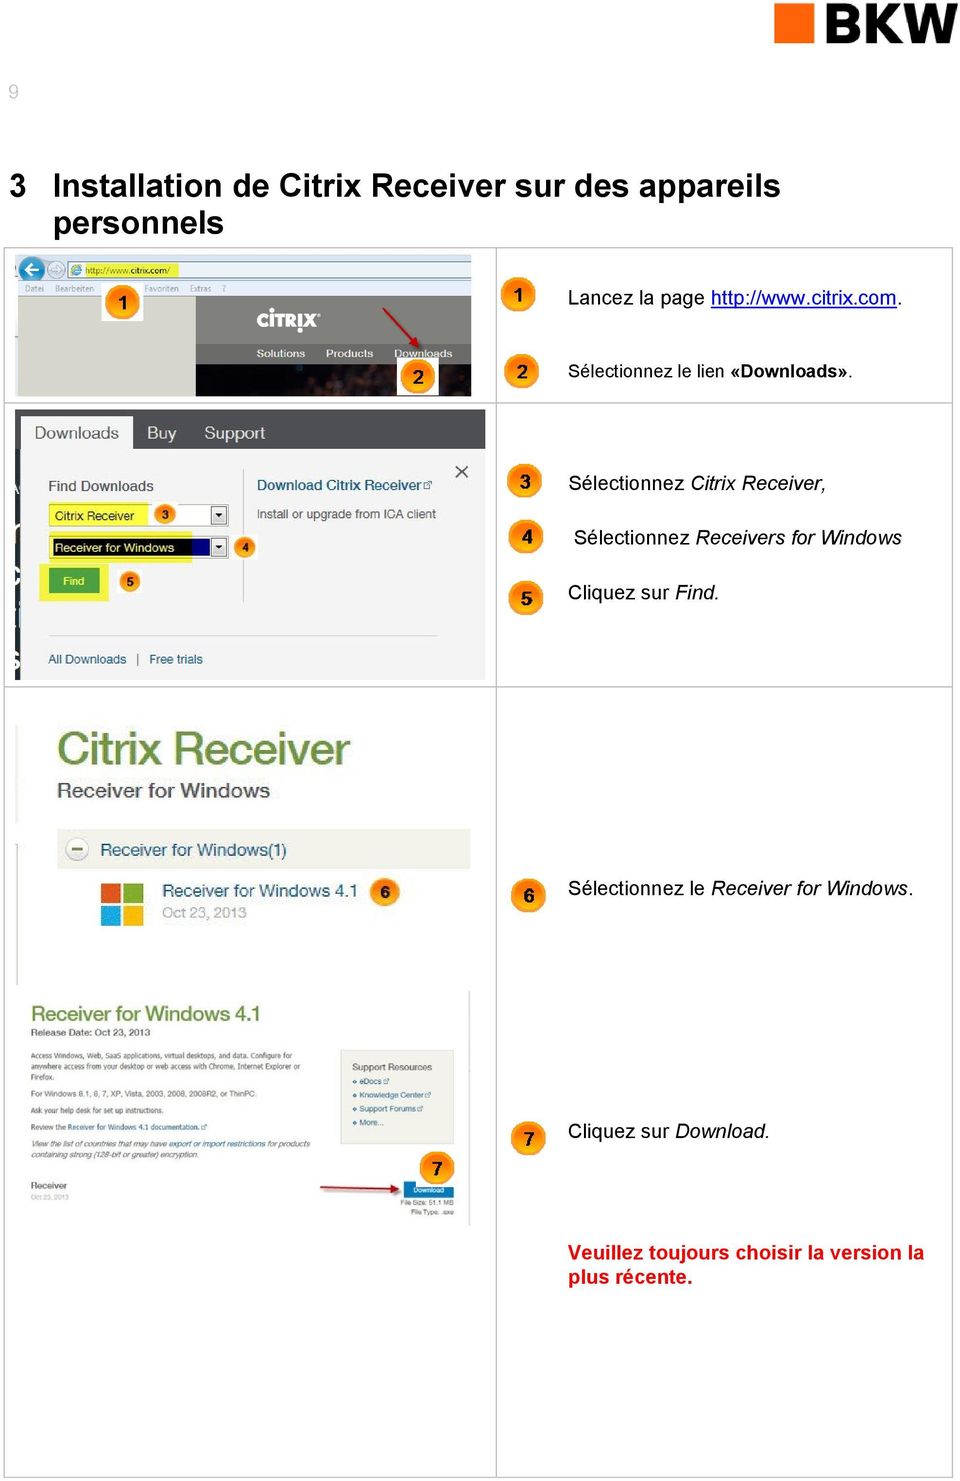 Sélectionnez Citrix Receiver, Sélectionnez Receivers for Windows Cliquez sur Find.